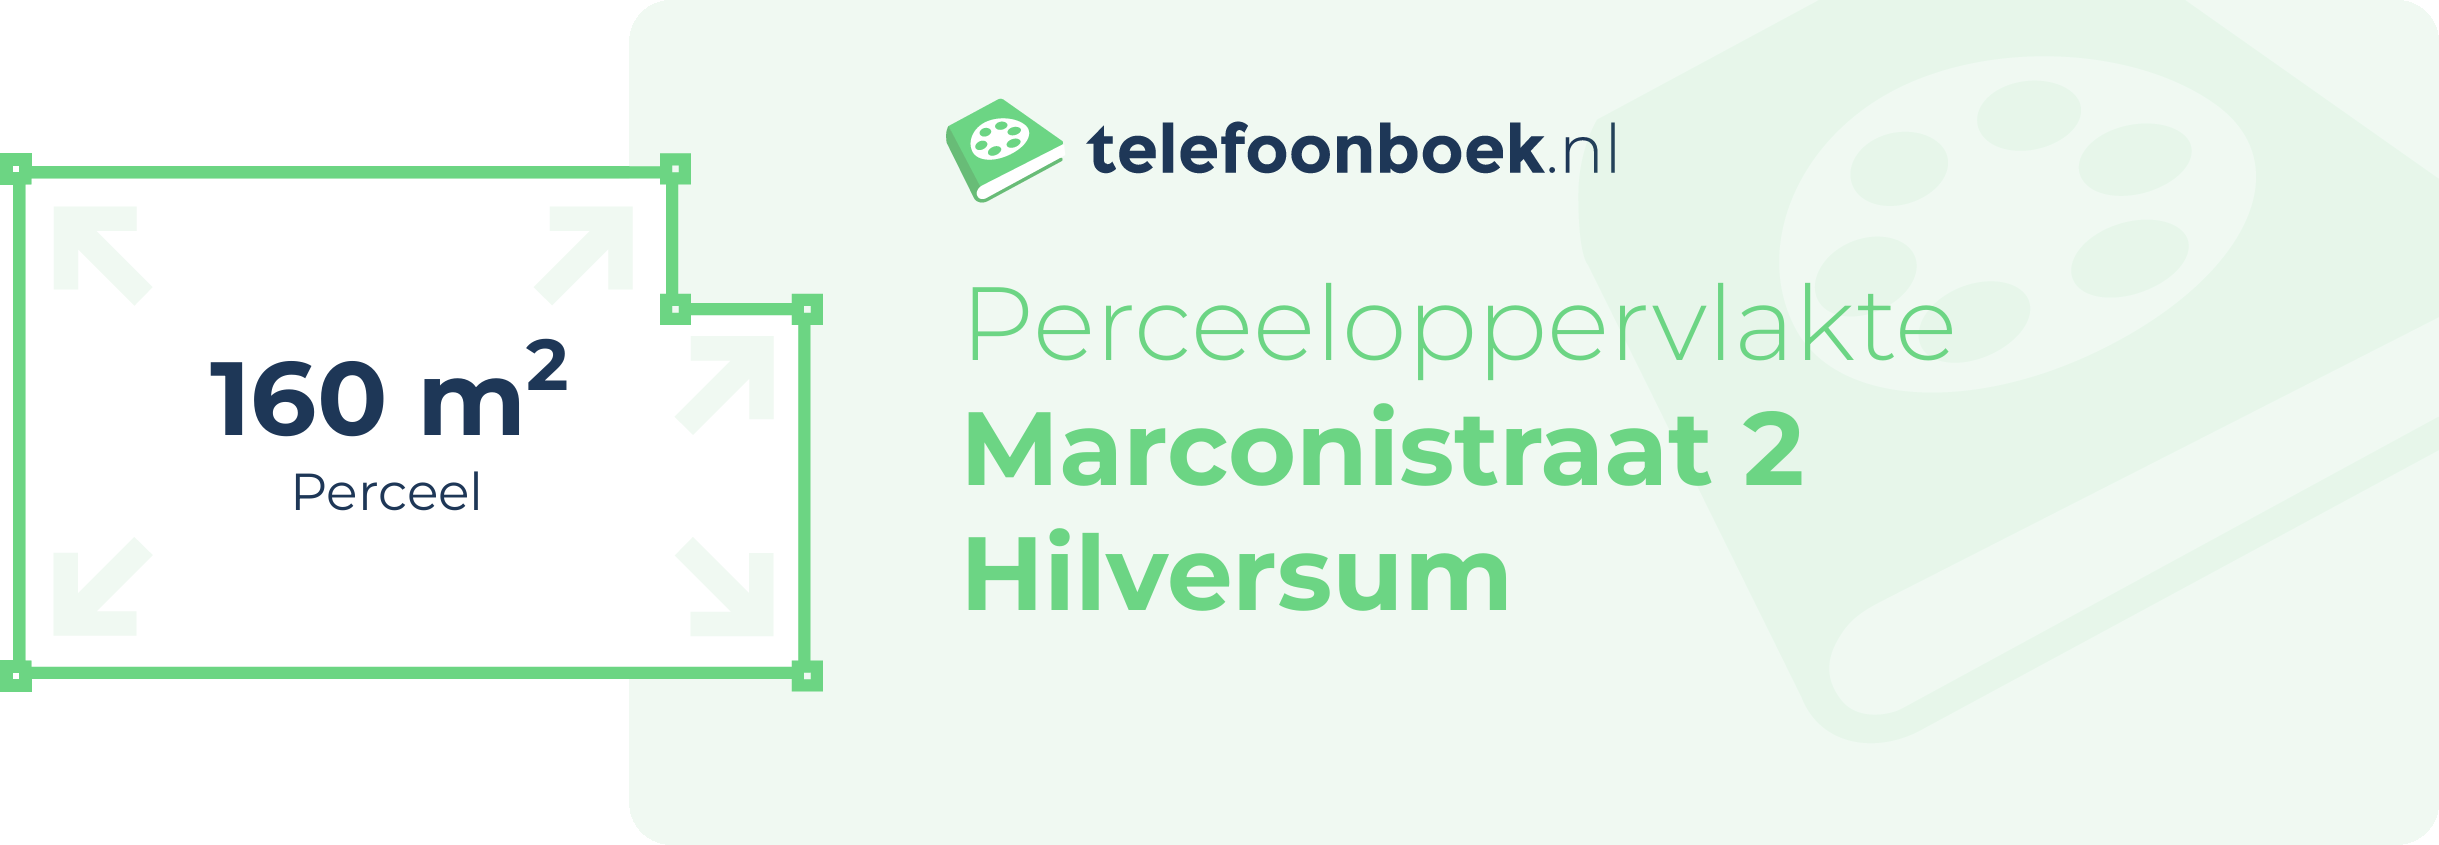 Perceeloppervlakte Marconistraat 2 Hilversum